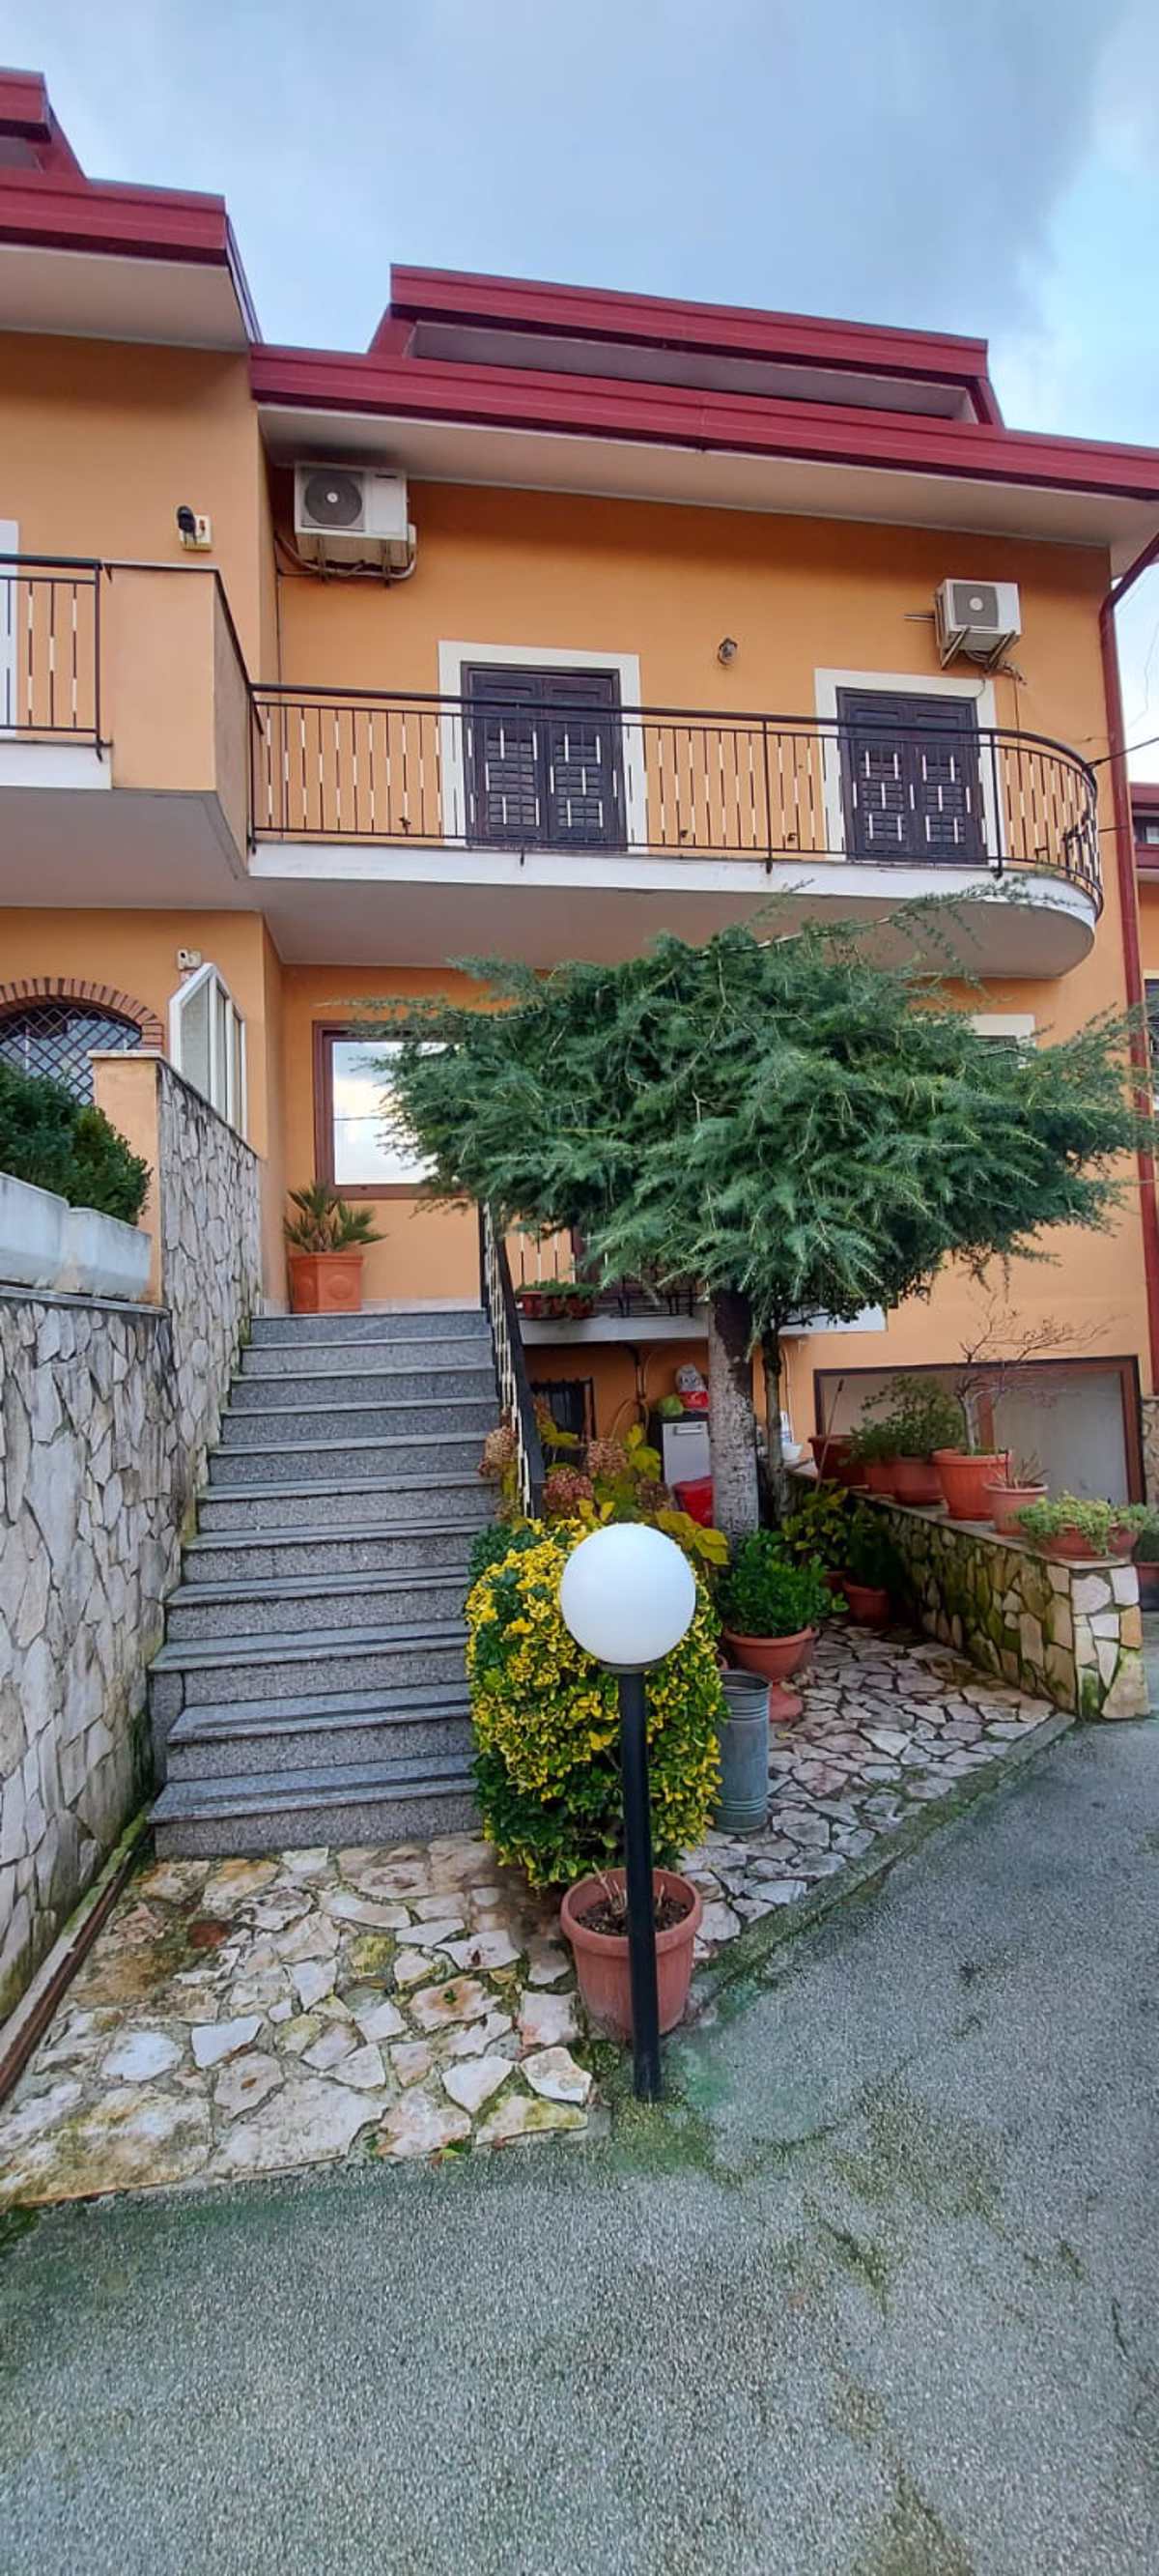 Villa a schiera Monteforte Irpino cod. rif5865055VRG